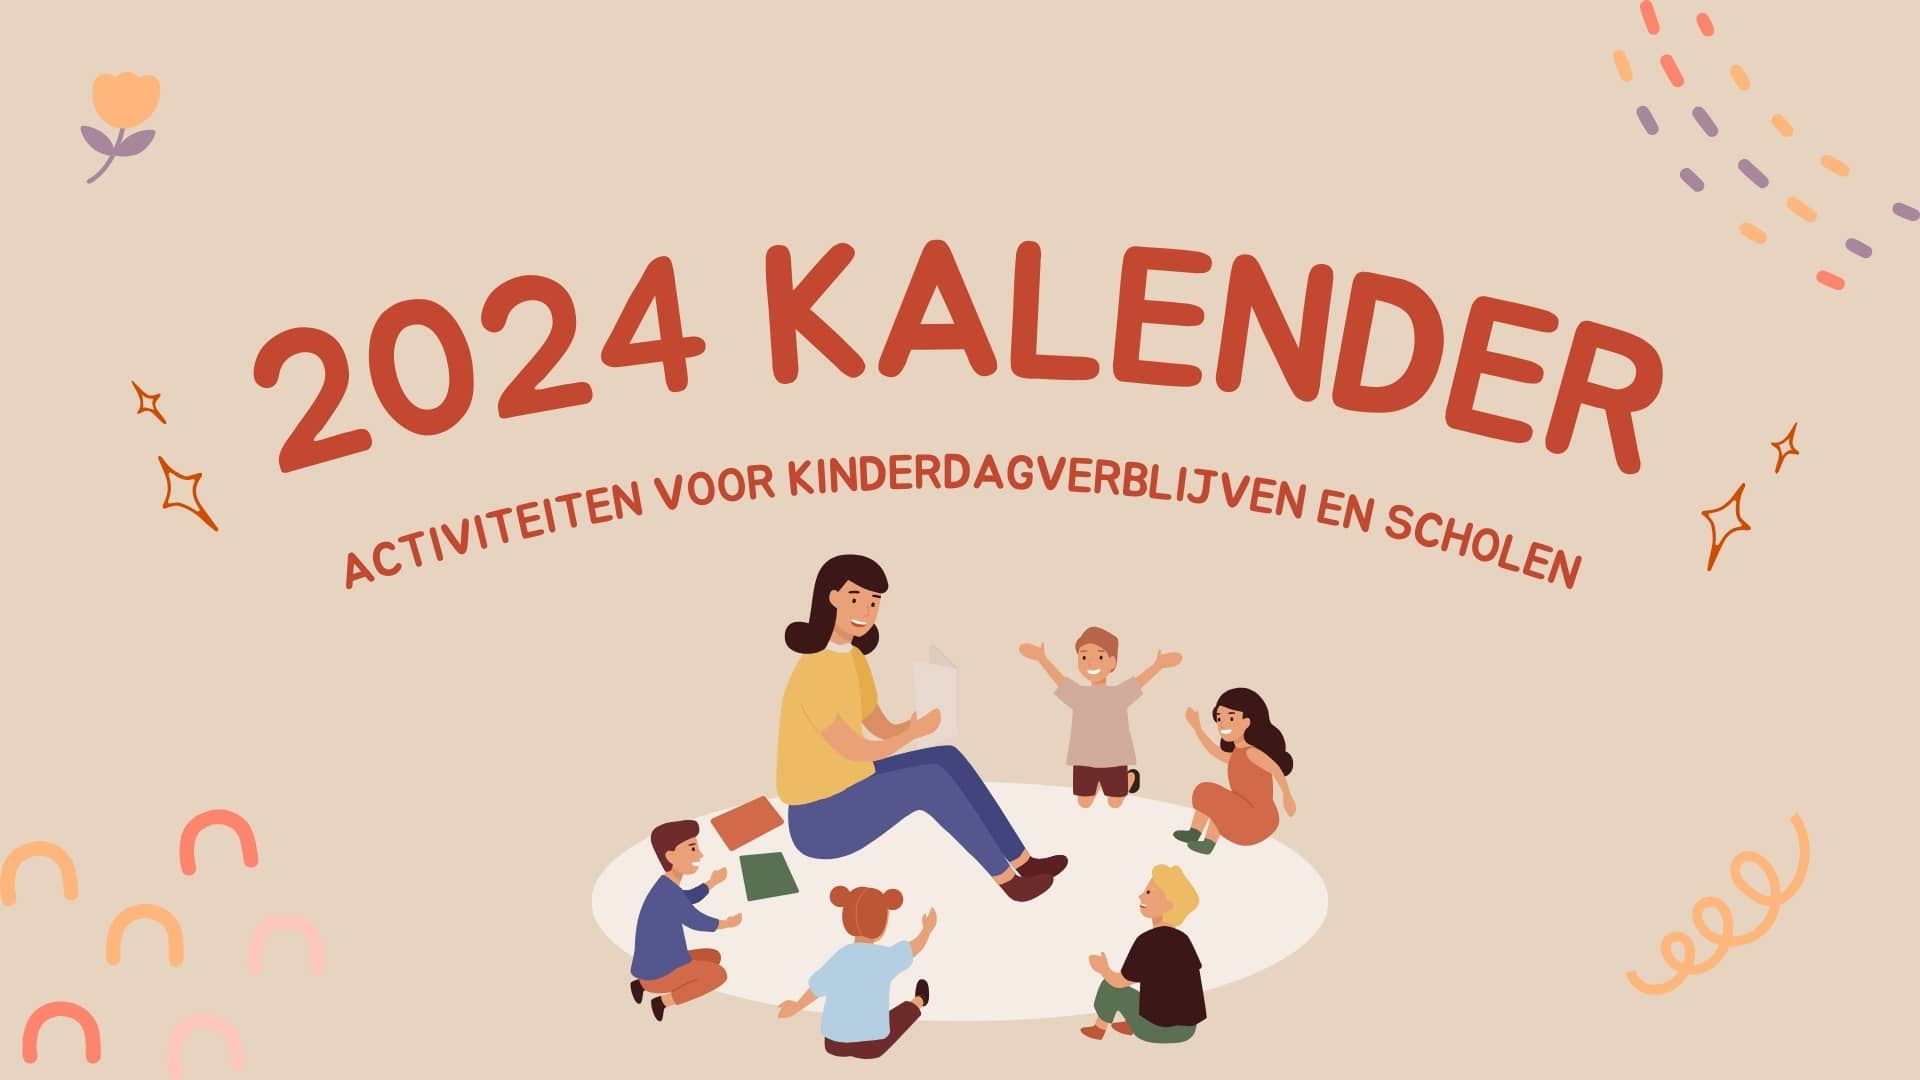 Een jaar van creativiteit en leren: de 2024 kalender voor kinderdagverblijven en scholen